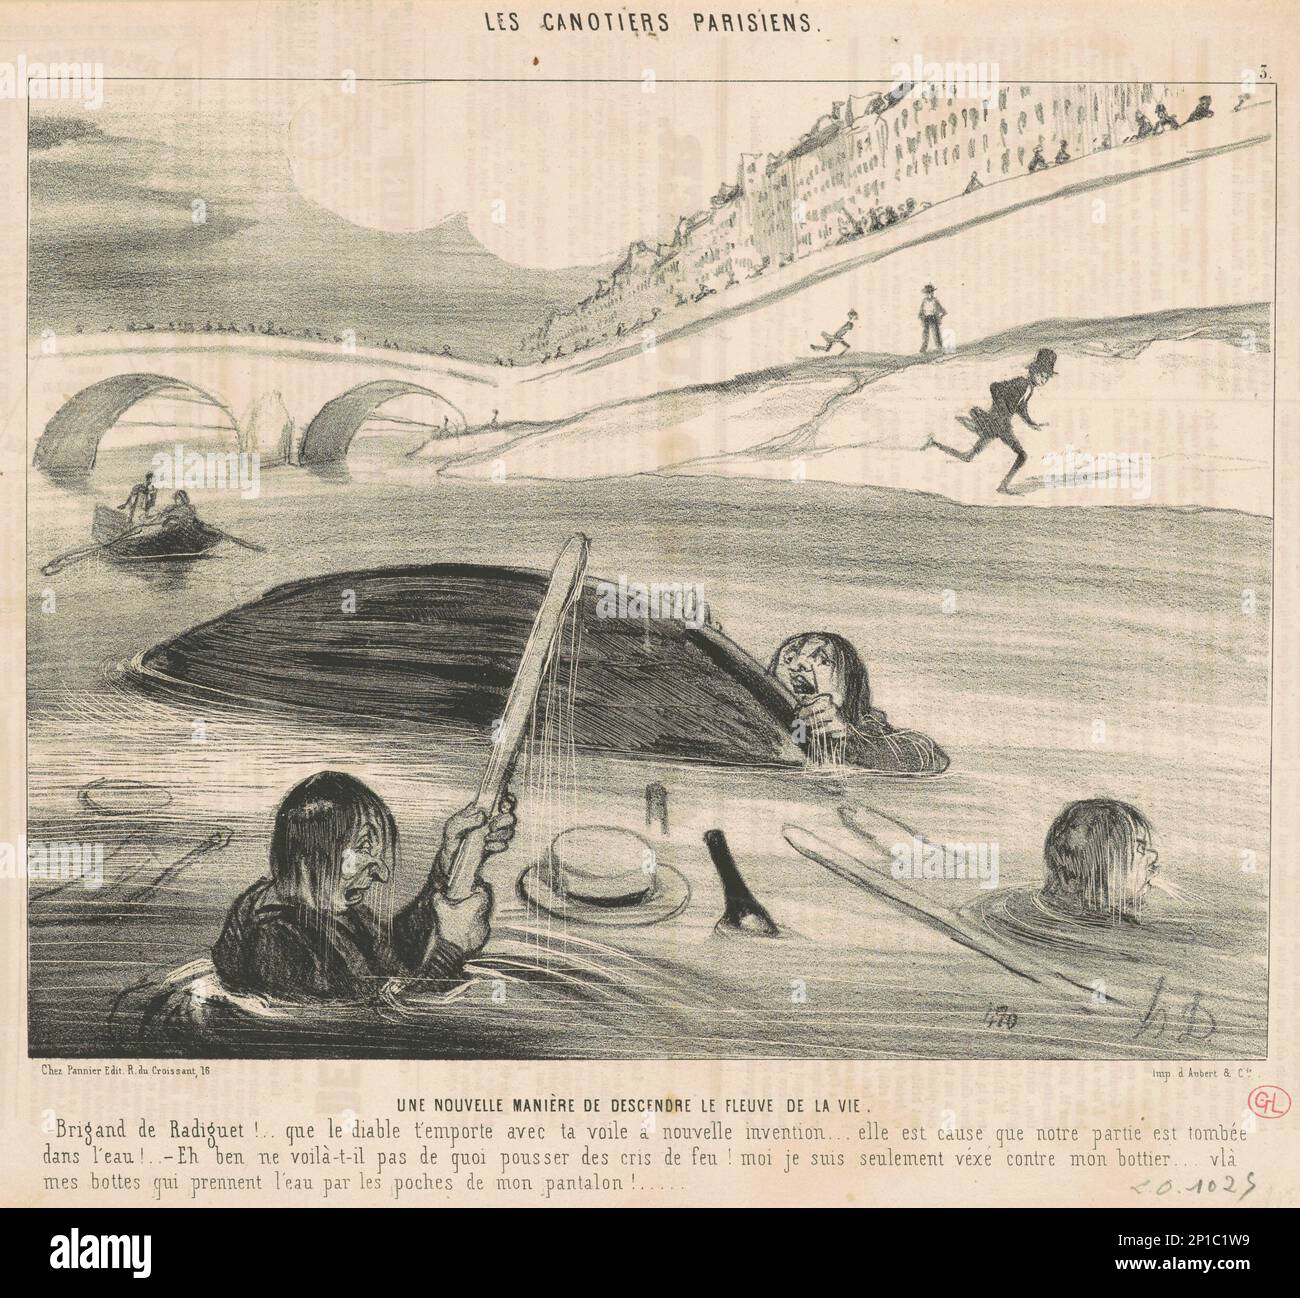 Une nouvelle mani&#xe9;re de descendre le fleuve de la vie, 19. Jahrhundert. Pariser Bootsfahrer - eine neue Art, den Fluss des Lebens hinunter zu gehen. Stockfoto